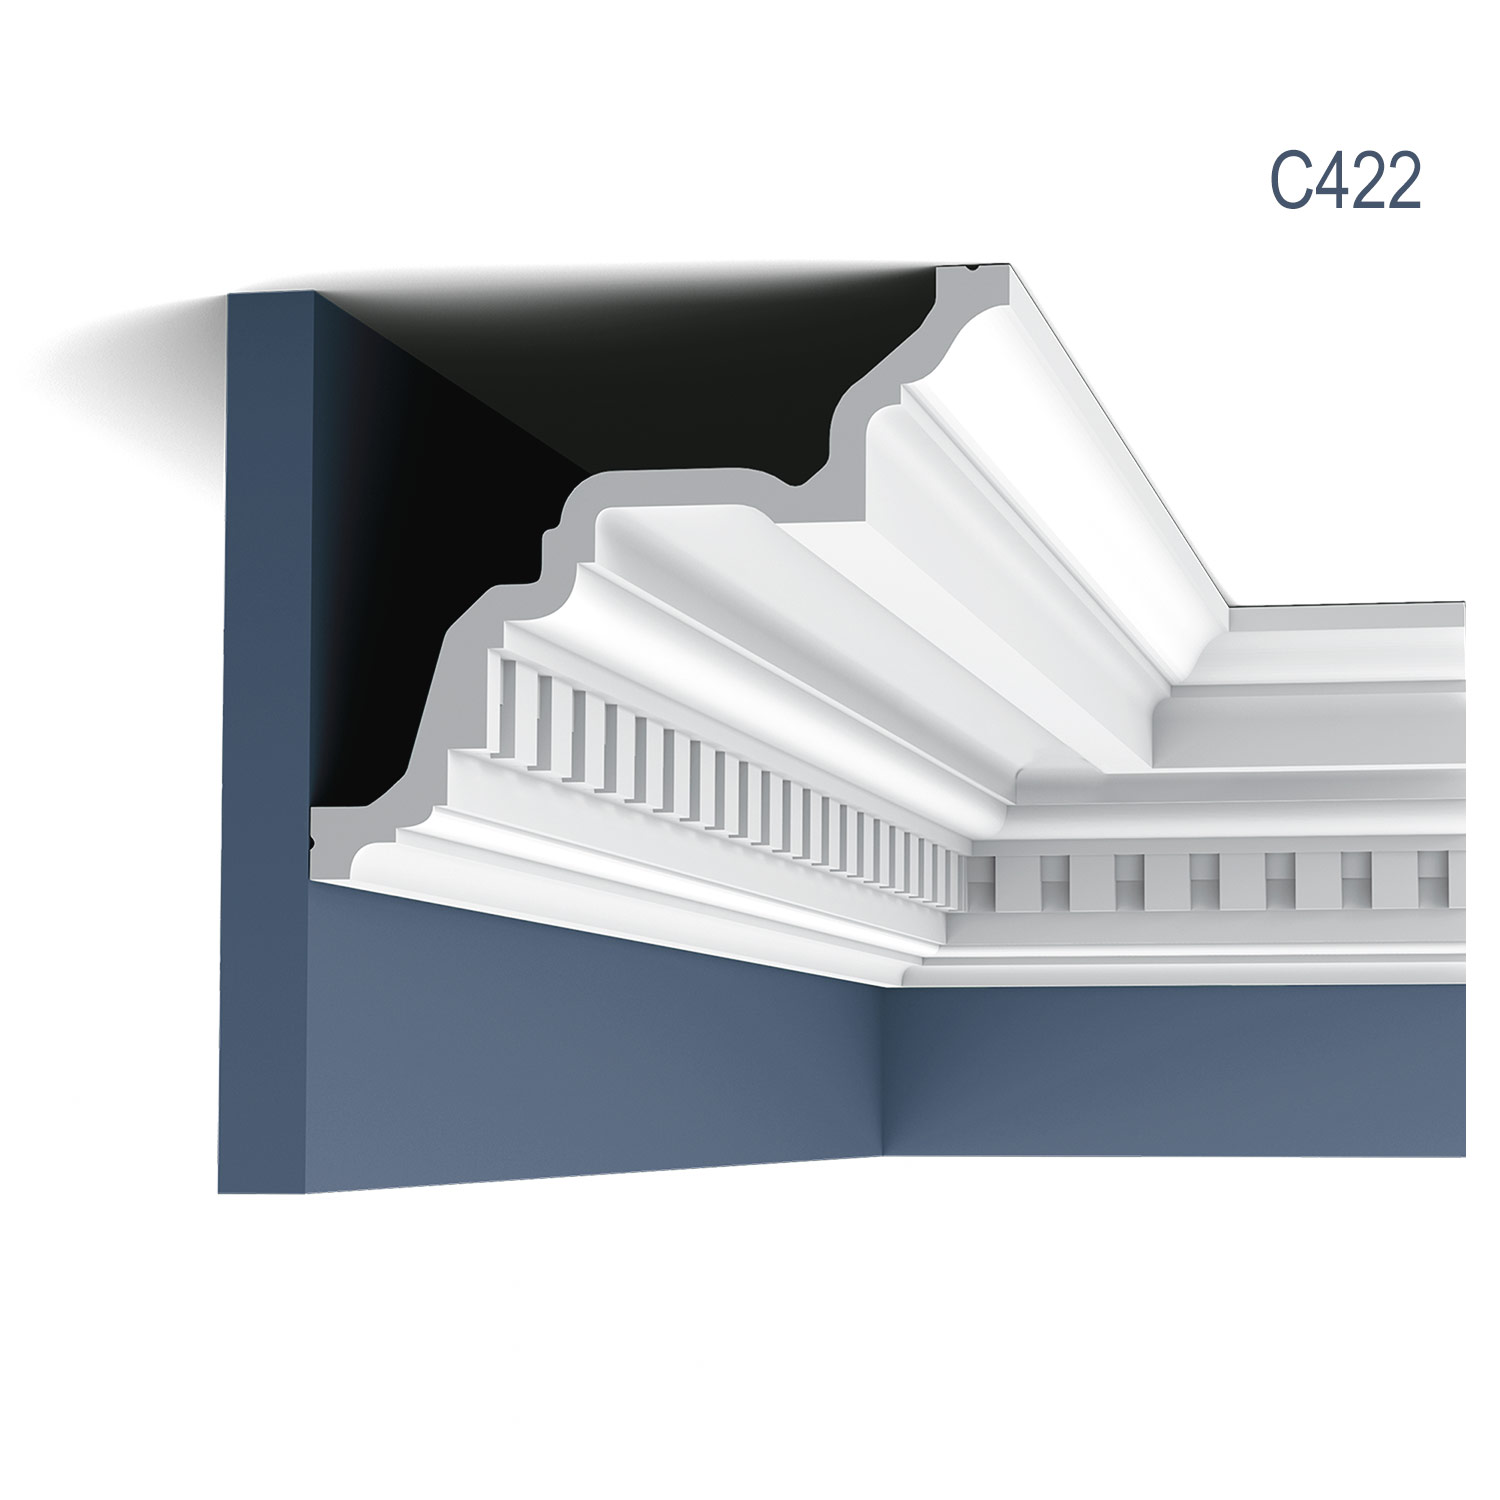 Cornisa C422, profil decorativ, pentru tavan, alba, vopsibila, rigida, calitate excelenta, Belgia, din Poliuretan rigid, L 200 x H 16.4 x W 19.4 cm